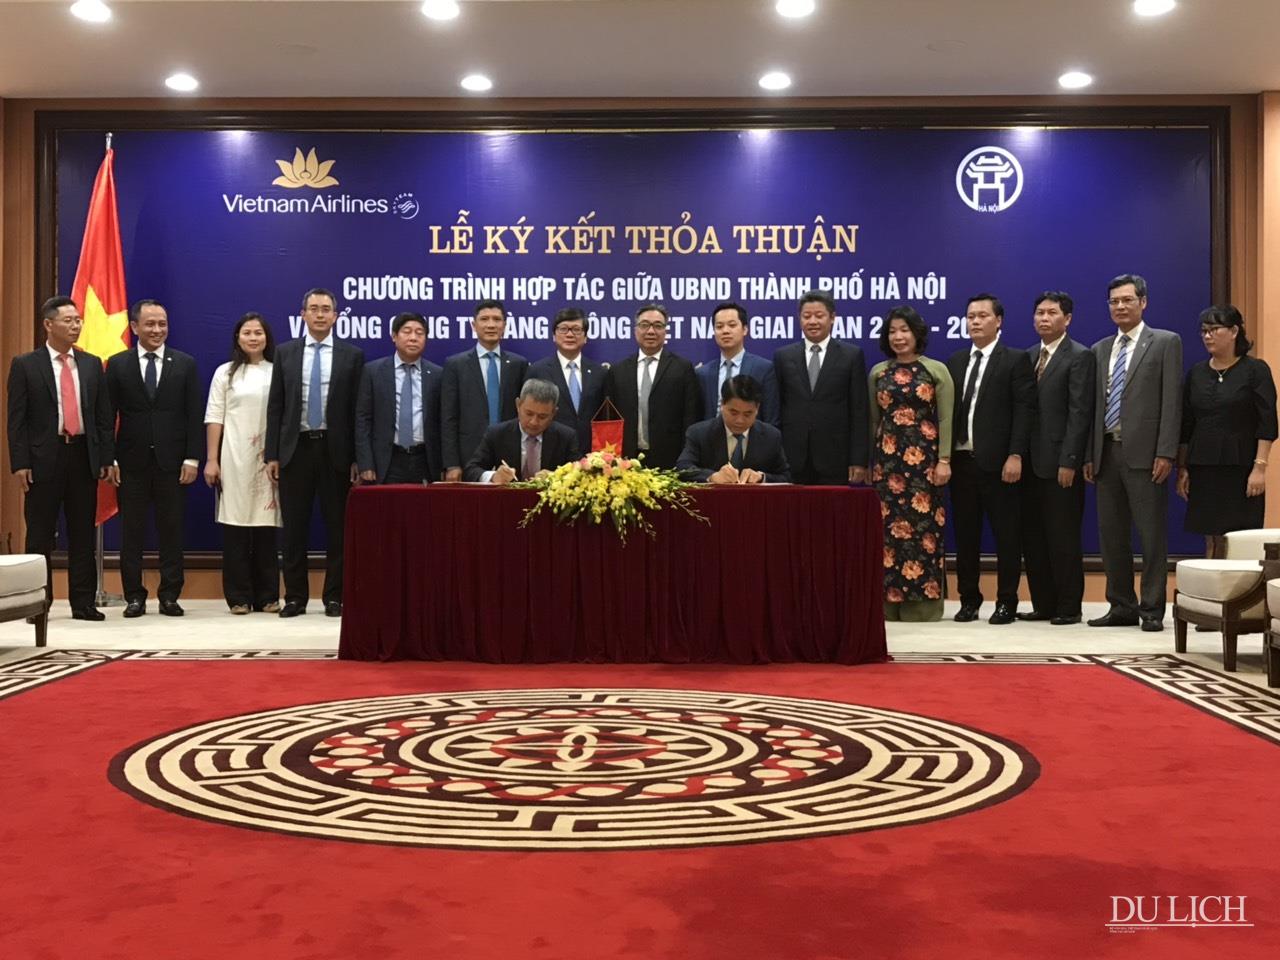 Lễ ký kết thỏa thuận hợp tác giữa thành phố Hà Nội với Tổng Công ty Hàng không Việt Nam giai đoạn 2019 - 2024